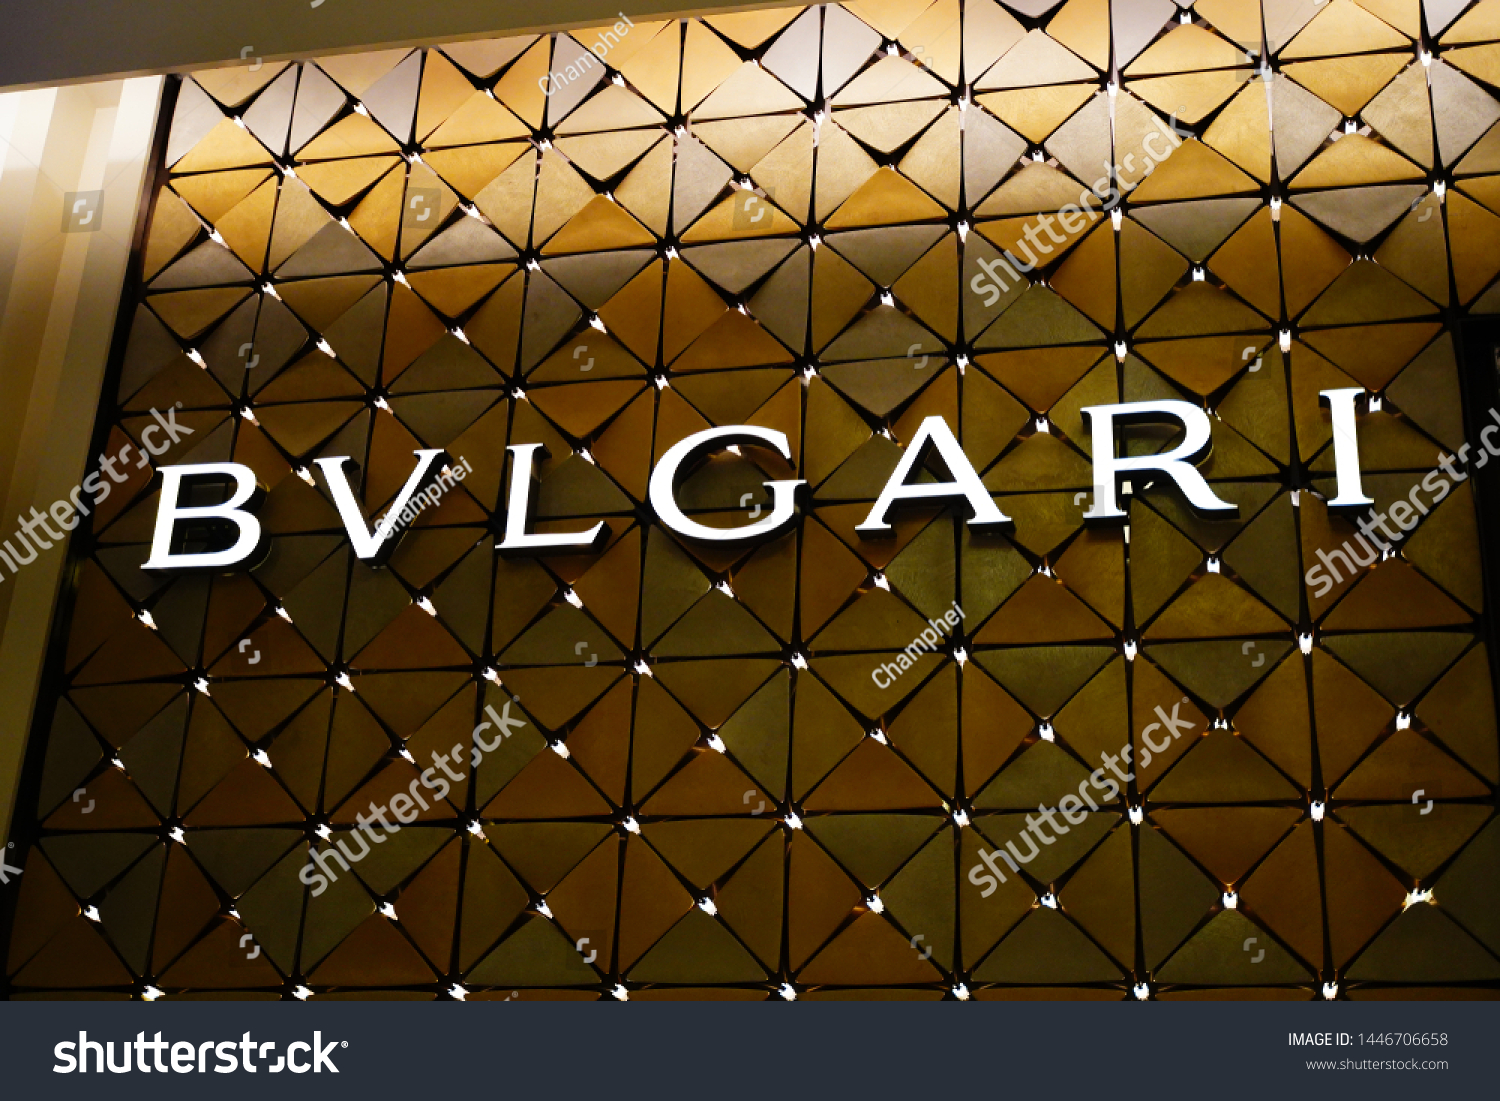 bvlgari brand logo